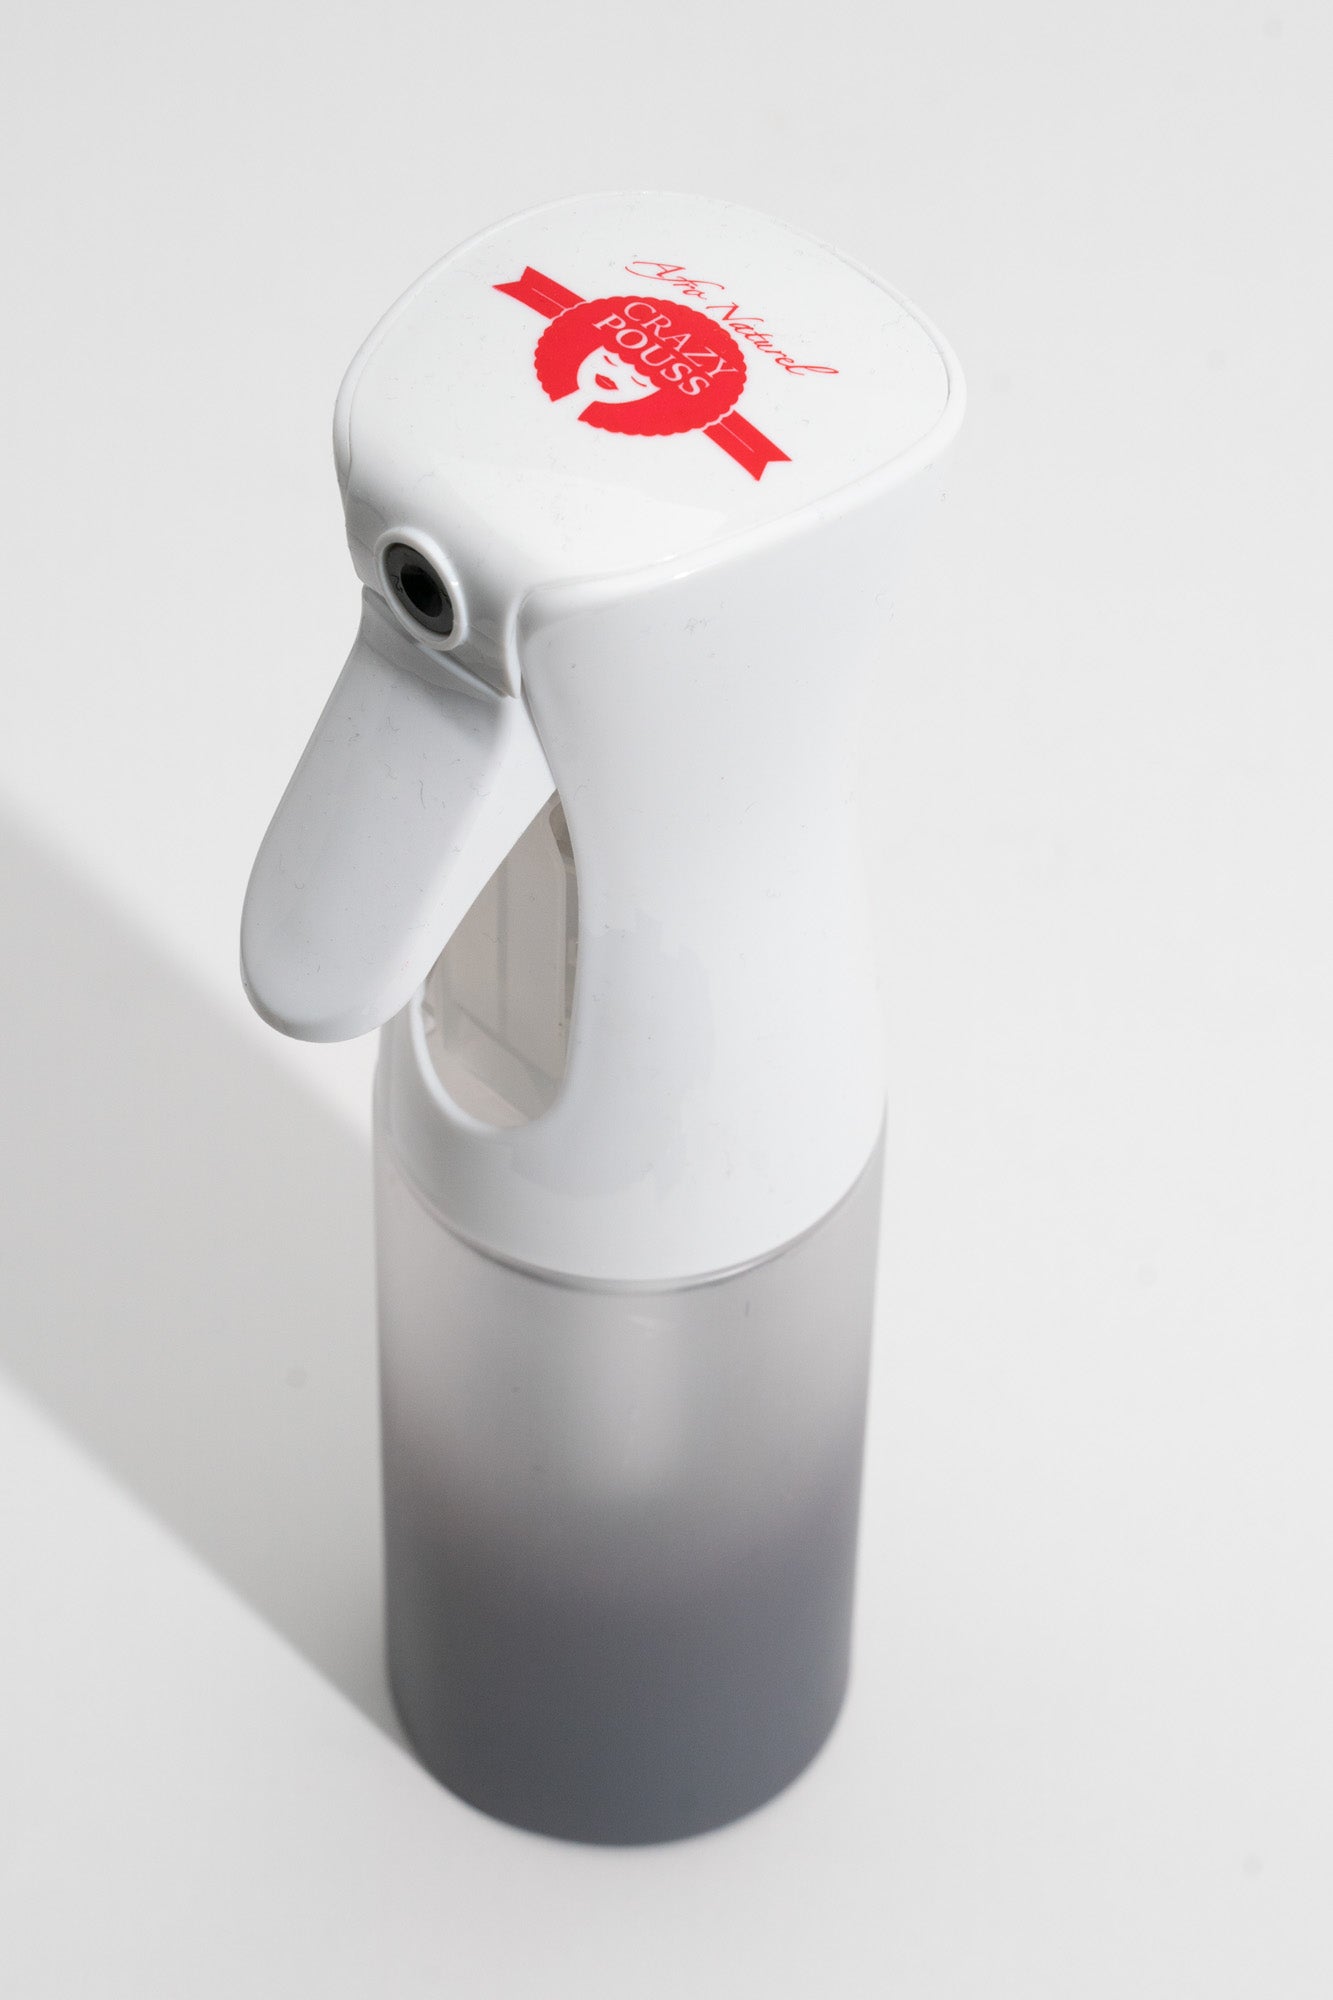 CRAZY POUSS - New vaporisateur crazy - Blanc - Vaporisateur à jet réglable pour humidifier vos cheveux avant le coiffage